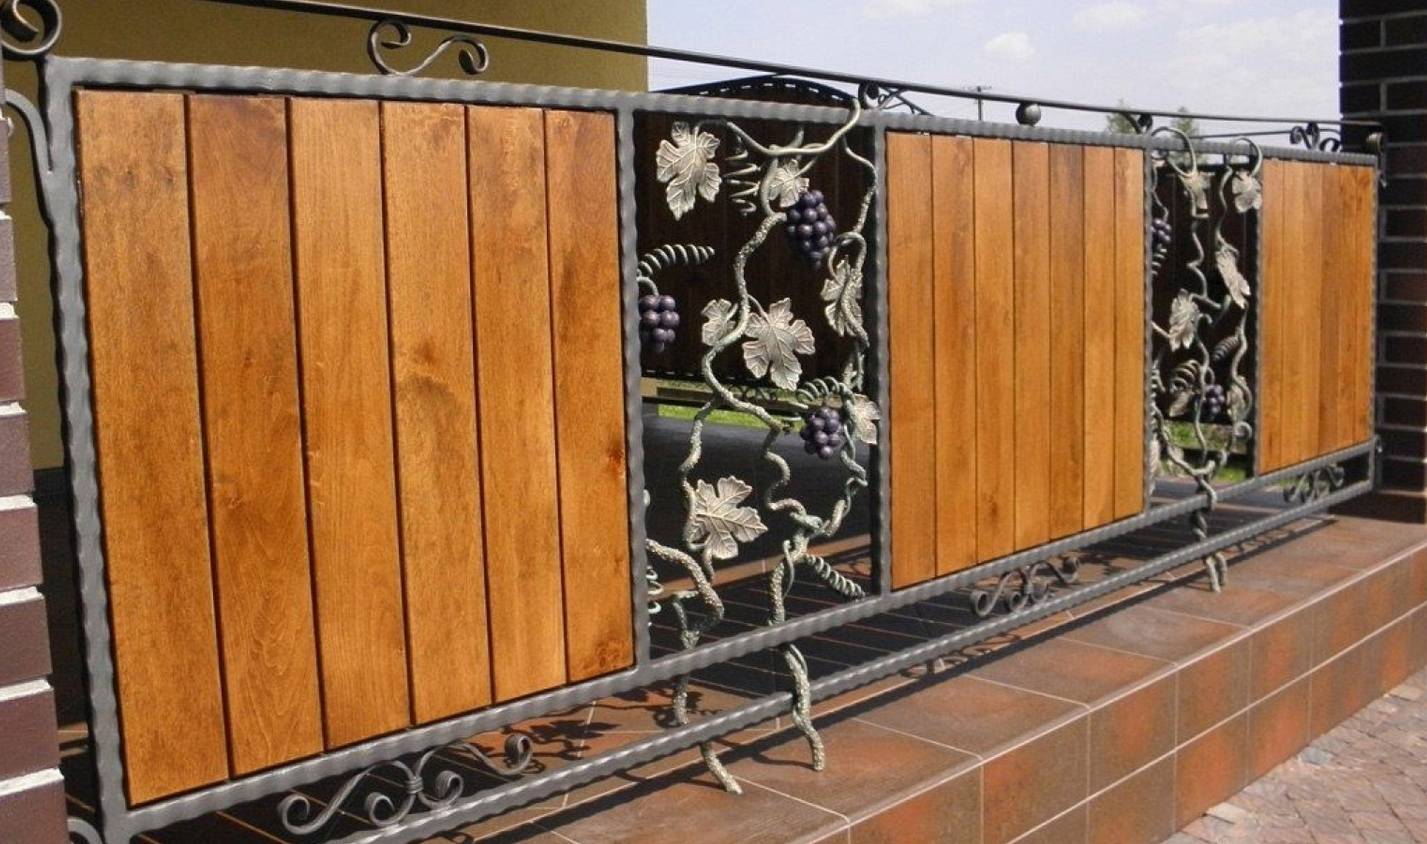 Декоративный забор для дачи — функции виды и требования к ограде, варианты декоративного оформления забора своими руками (фото + видео)